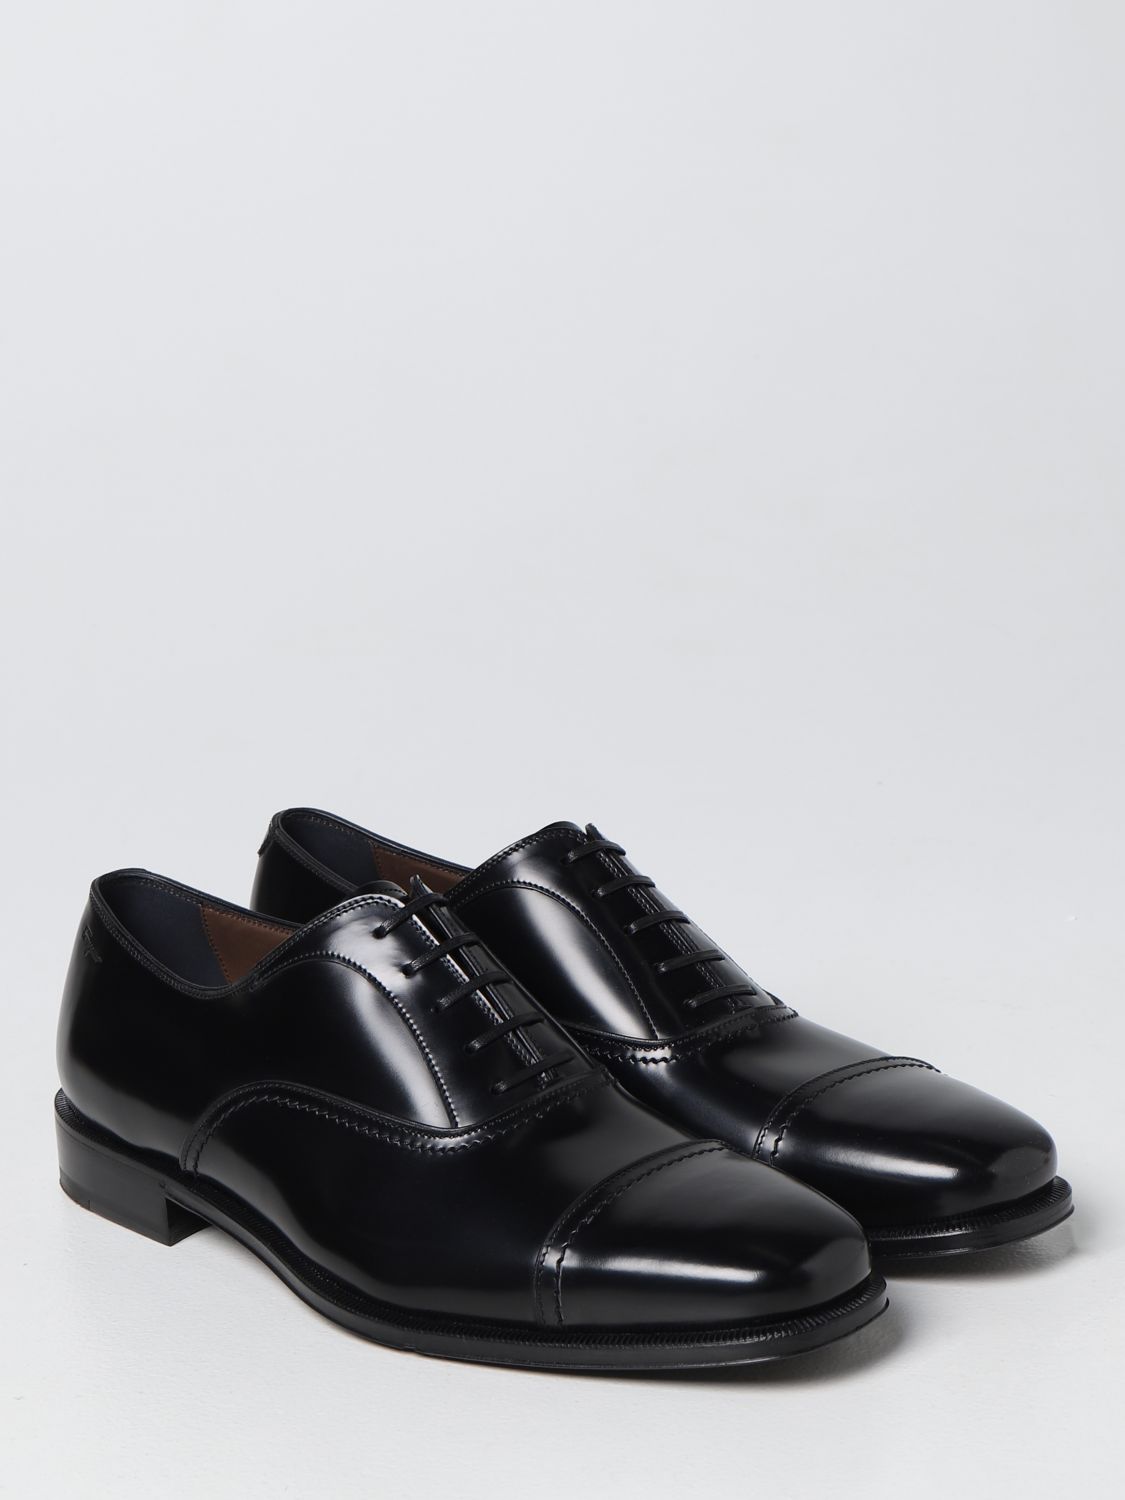 Chaussures derby Salvatore Ferragamo: Derbies Seoul Salvatore Ferragamo en cuir noir 2